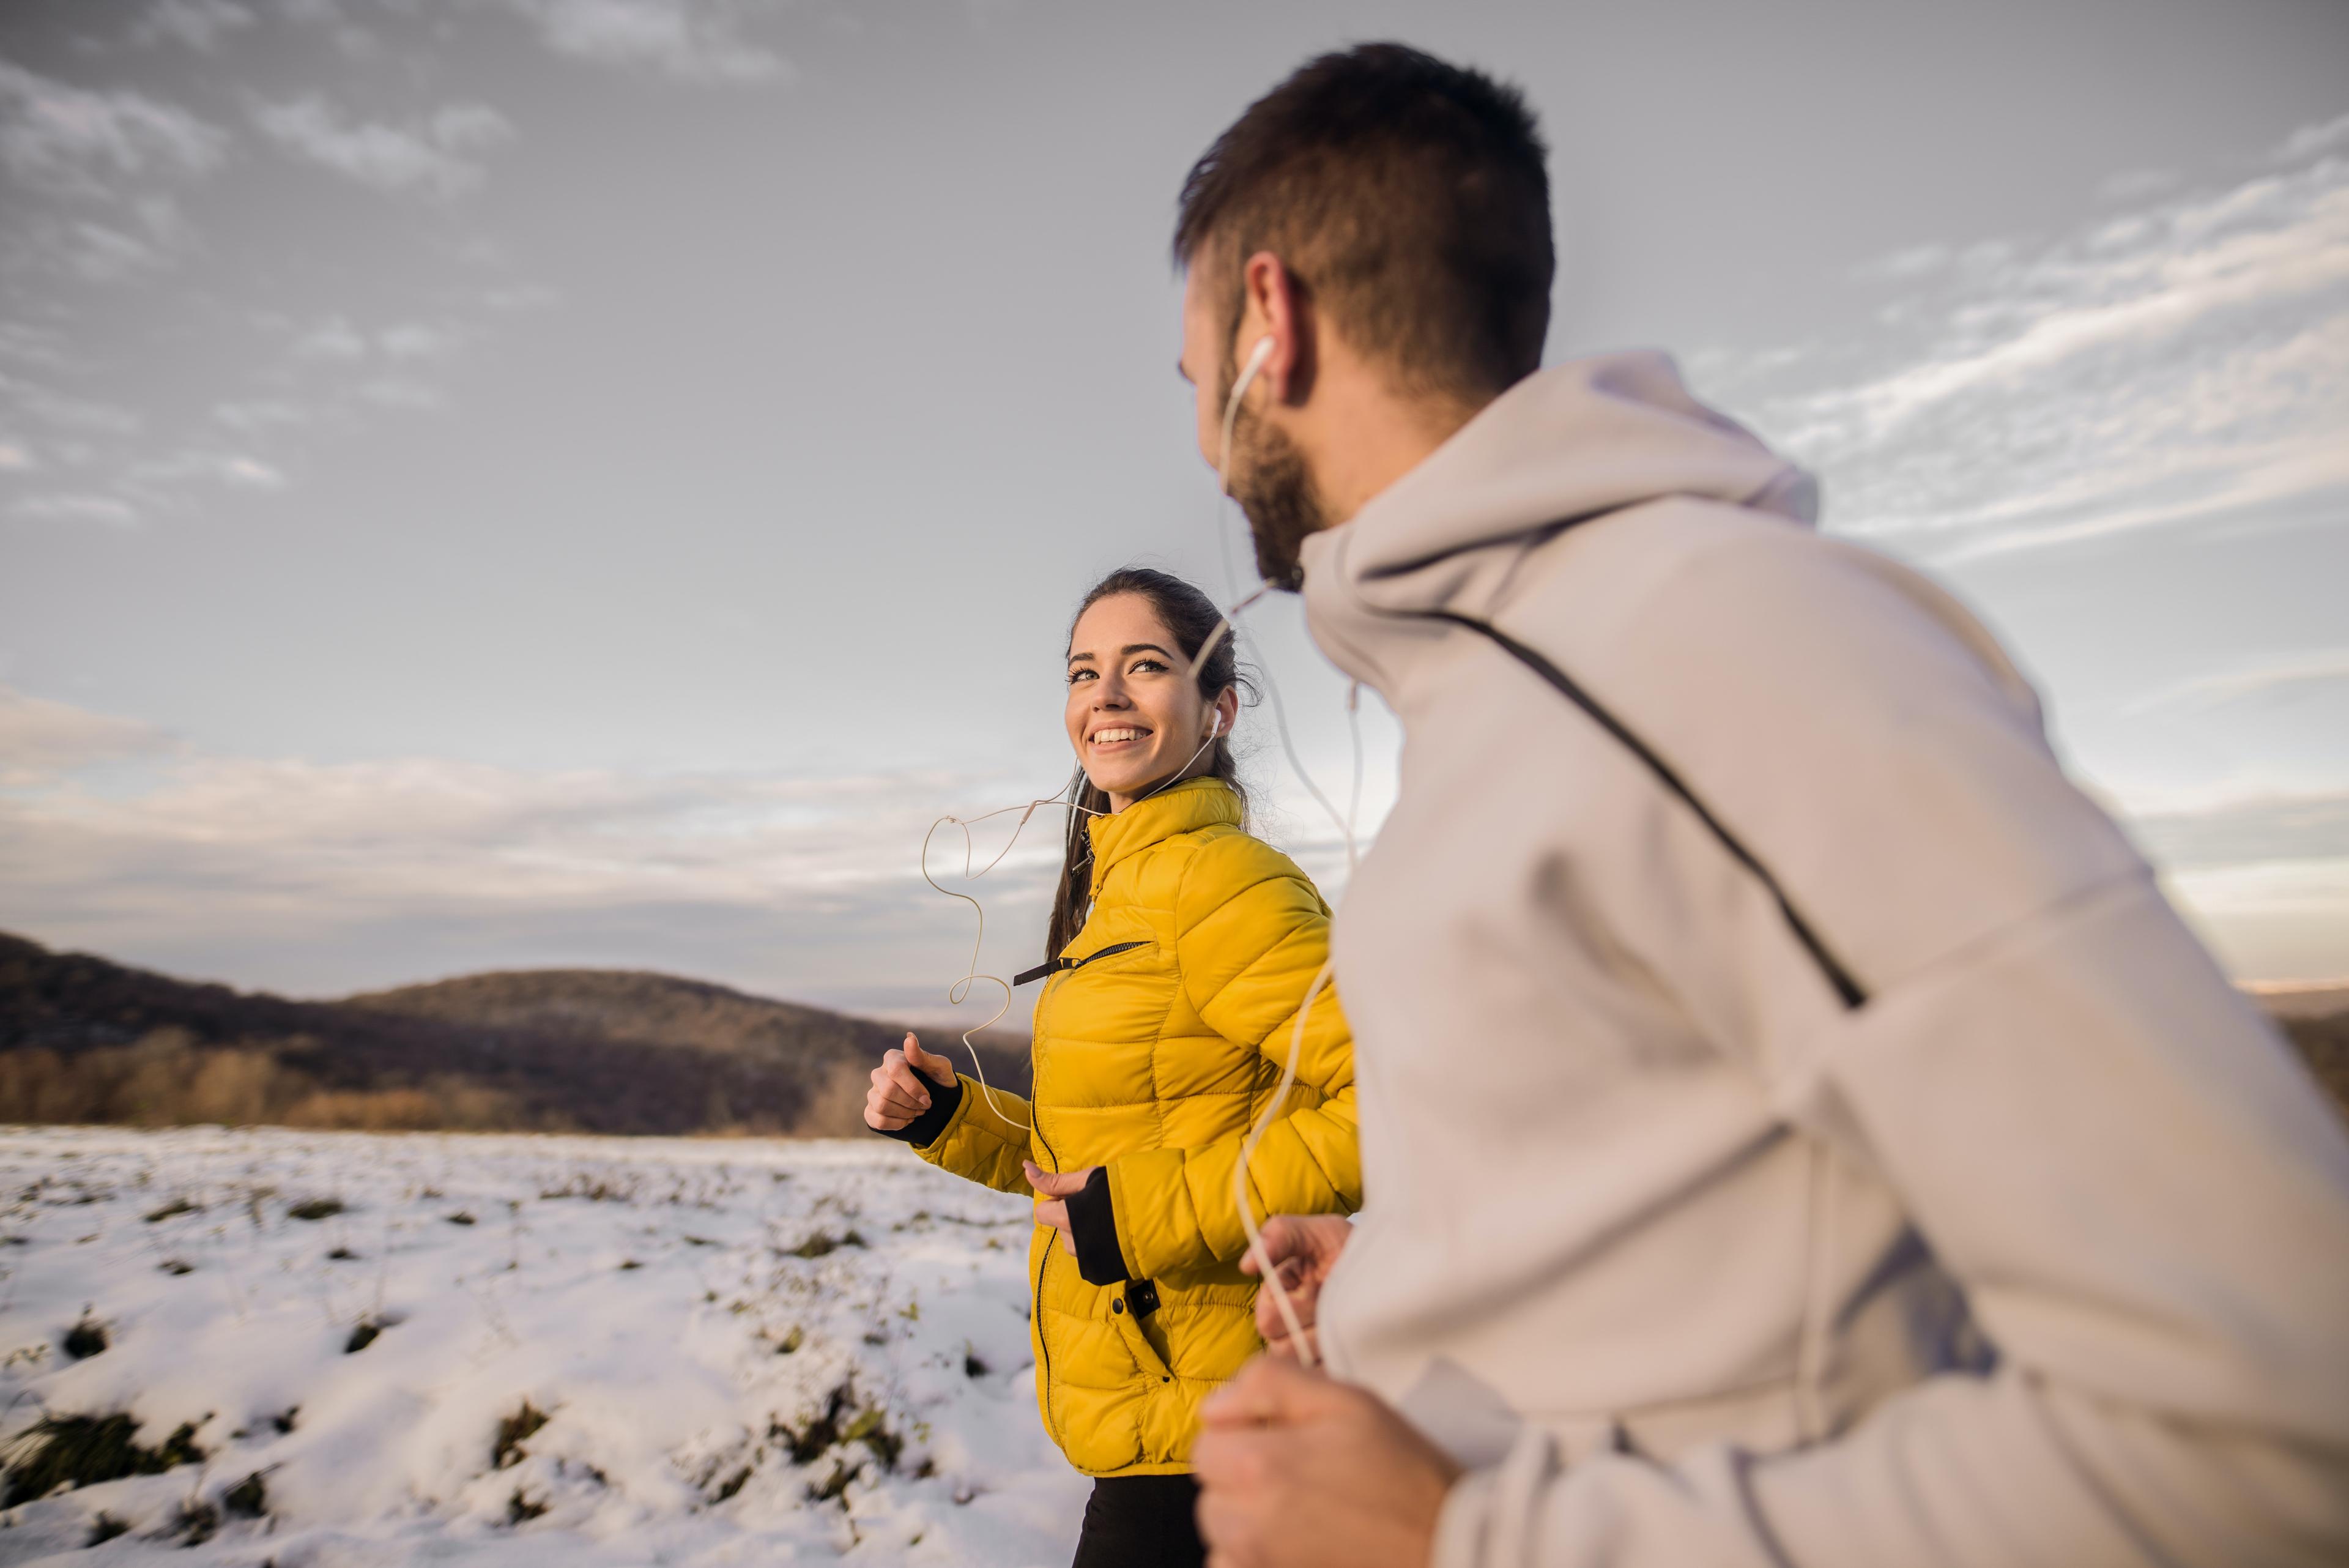 Bieganie zimą jak się przygotować? Wskazówki potrzebne do biegania zimą. Strój do biegania zimą, w czym biegać zimą? 